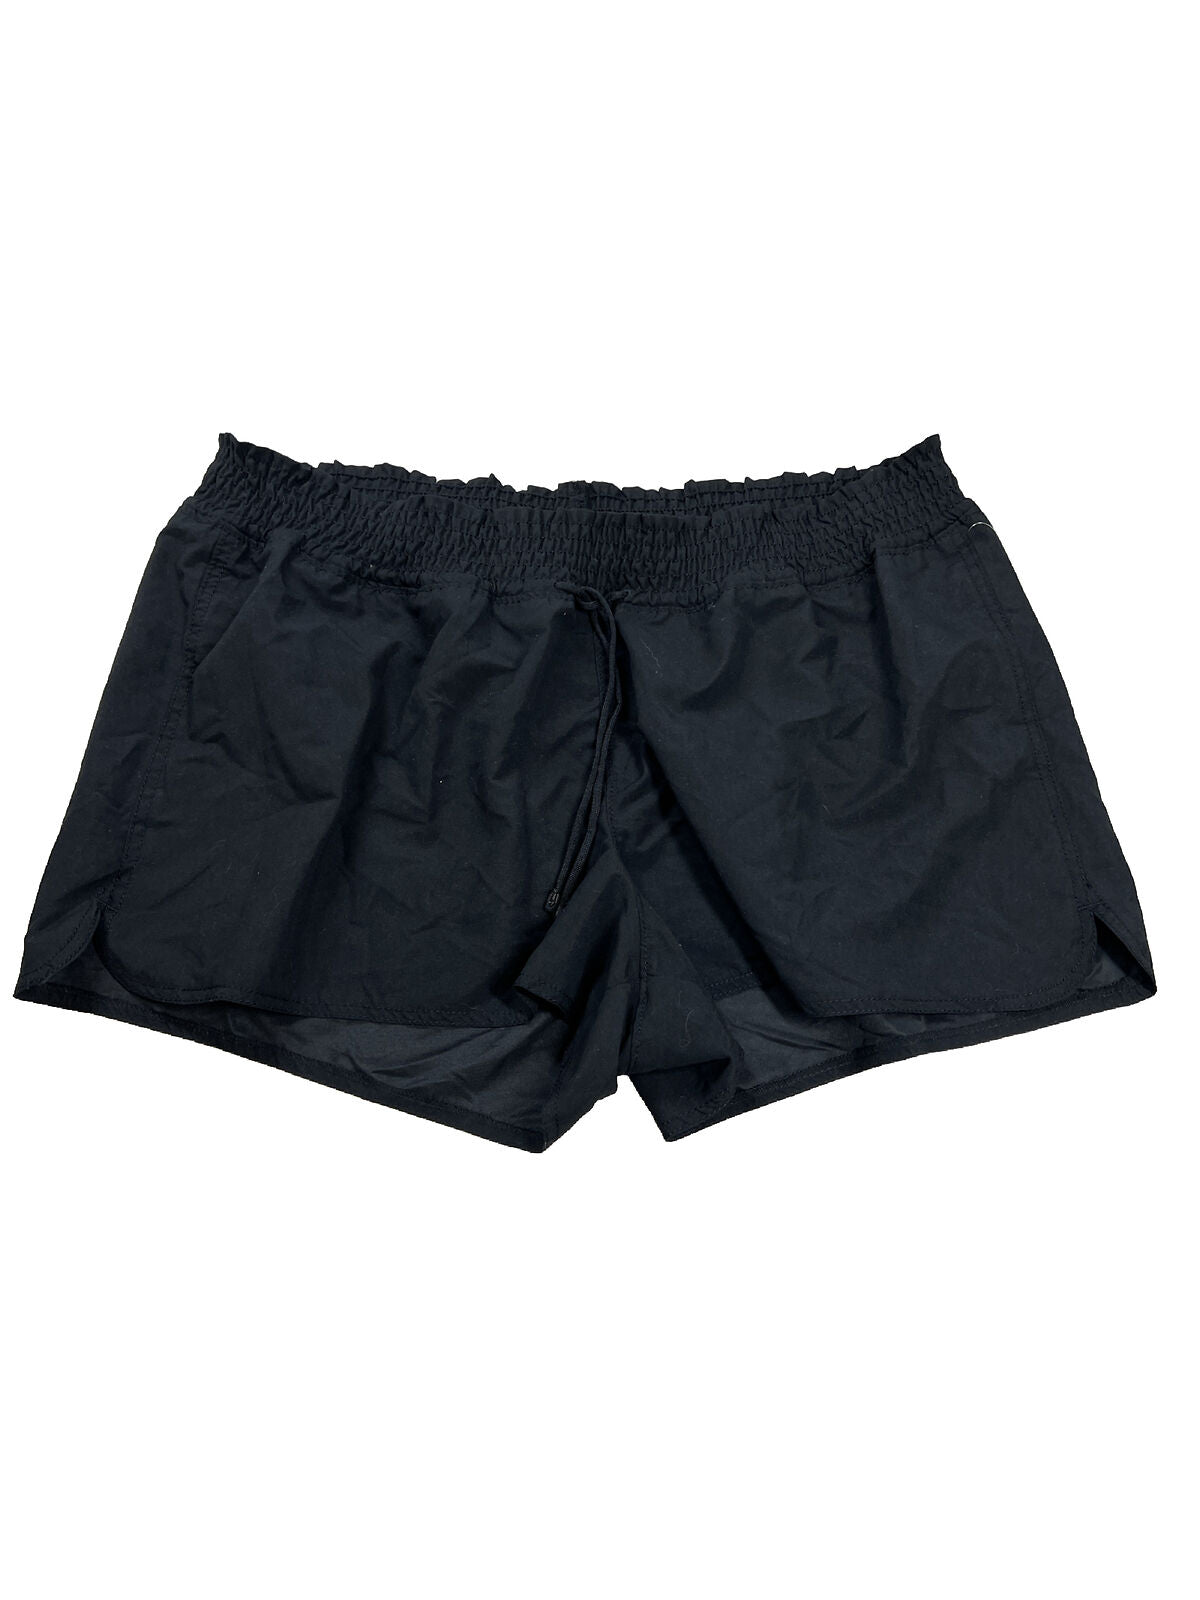 NUEVOS pantalones cortos informales con cintura anudada en negro para mujer Old Navy - 2XL